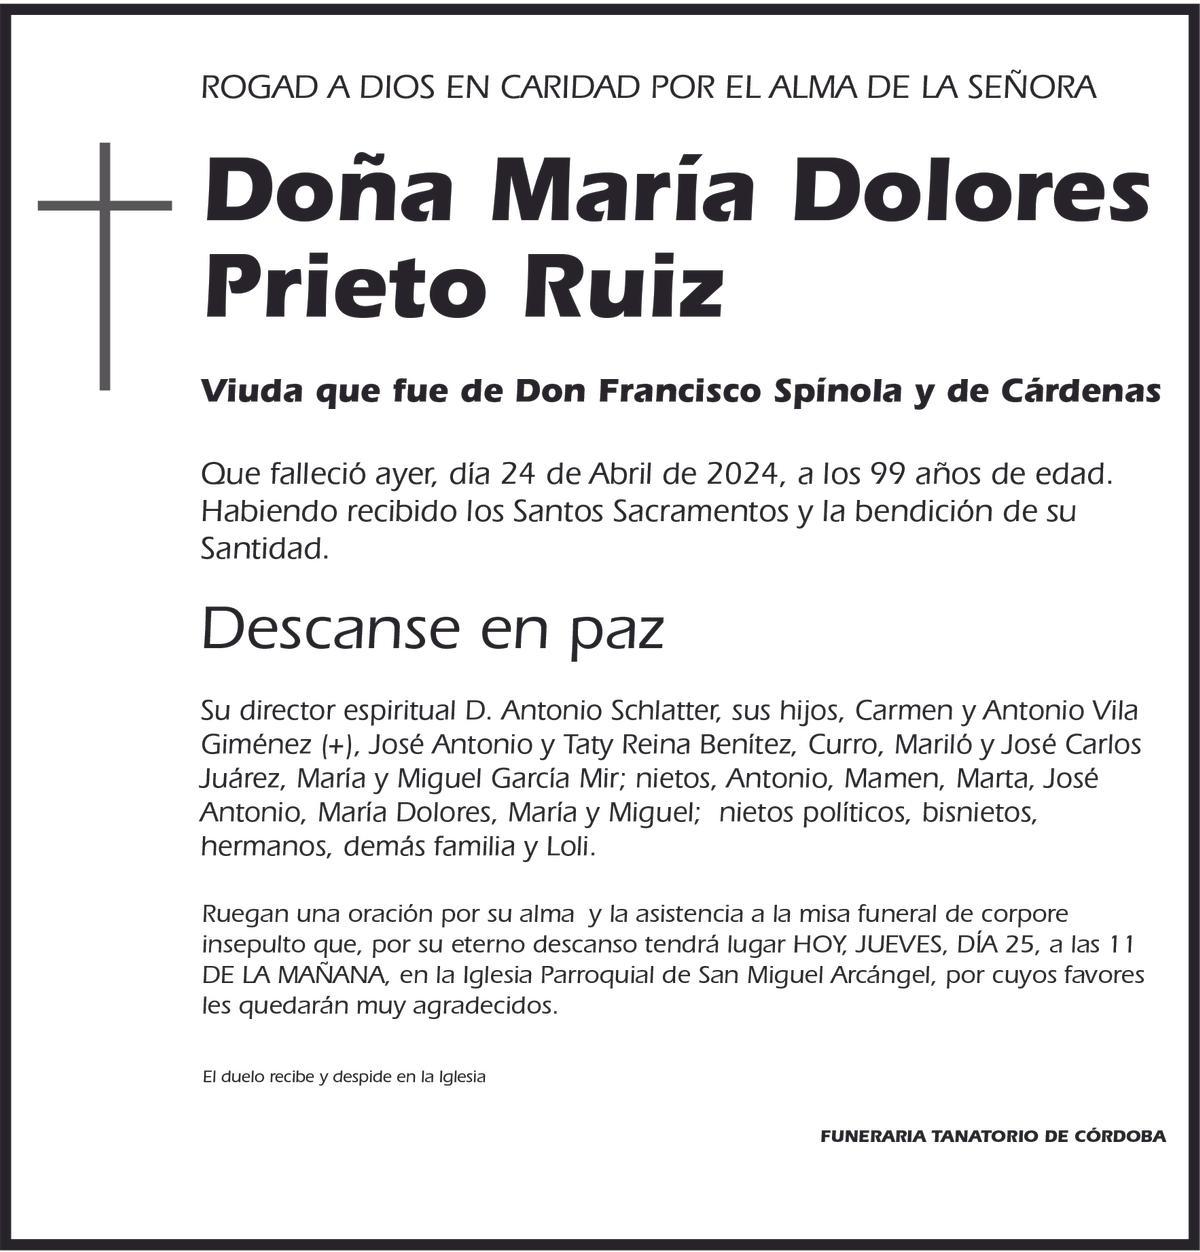 María Dolores Prieto Ruiz